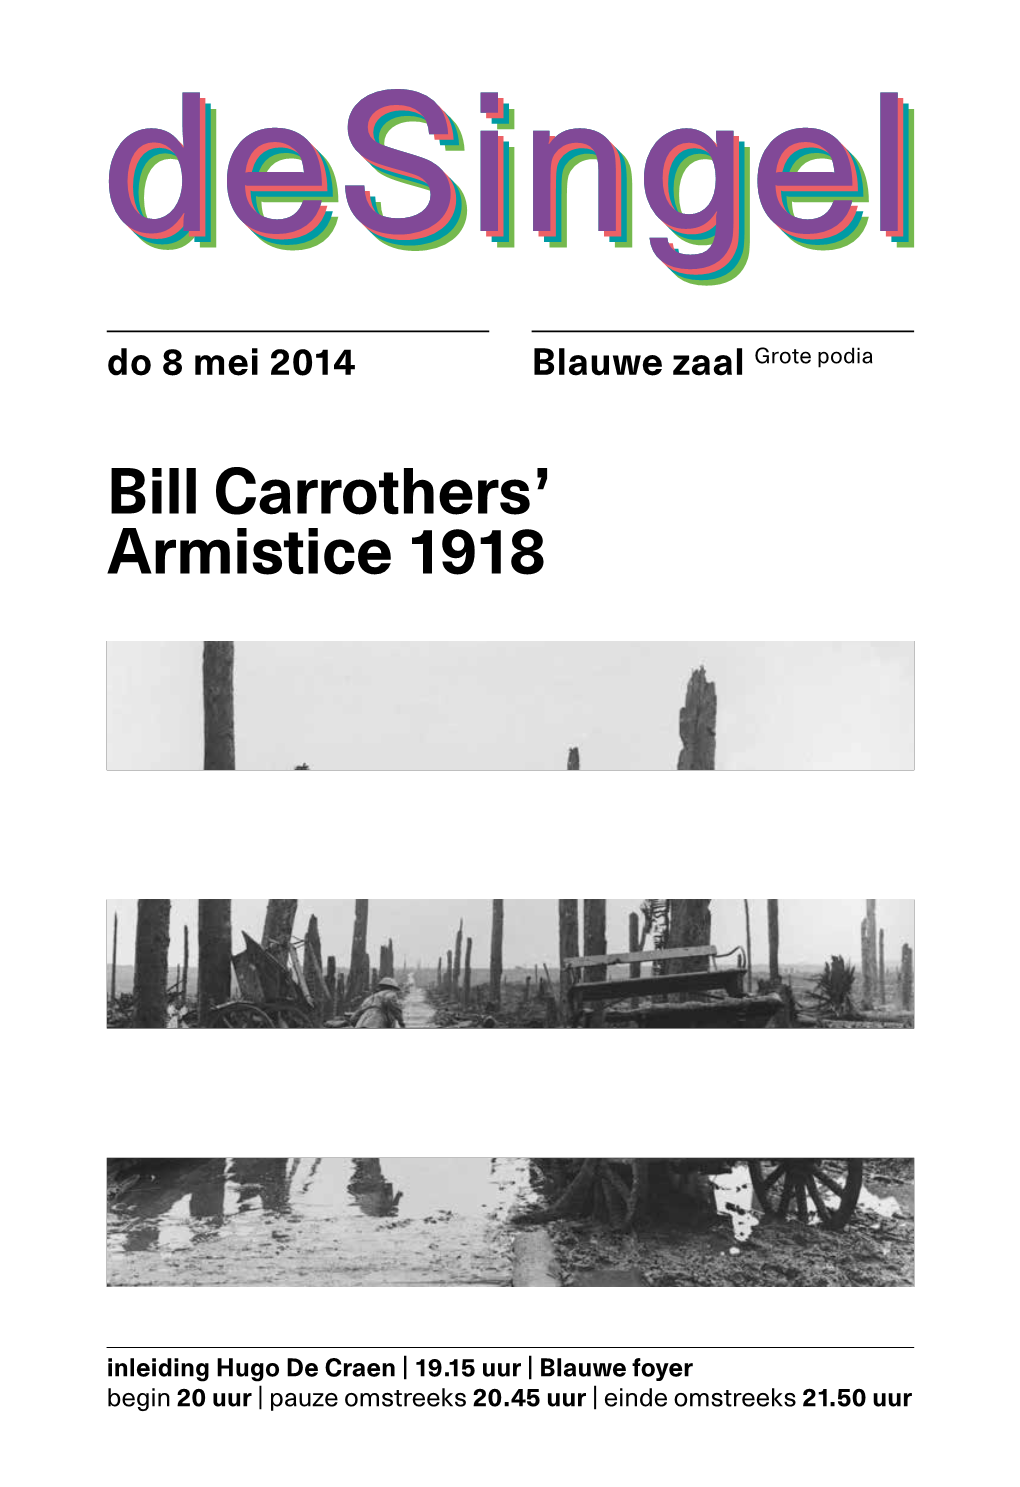 Bill Carrothers' Armistice 1918